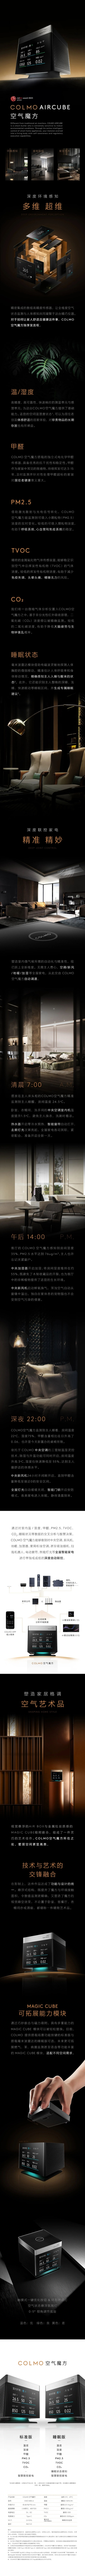 新品上市 | COLMO 空气魔方